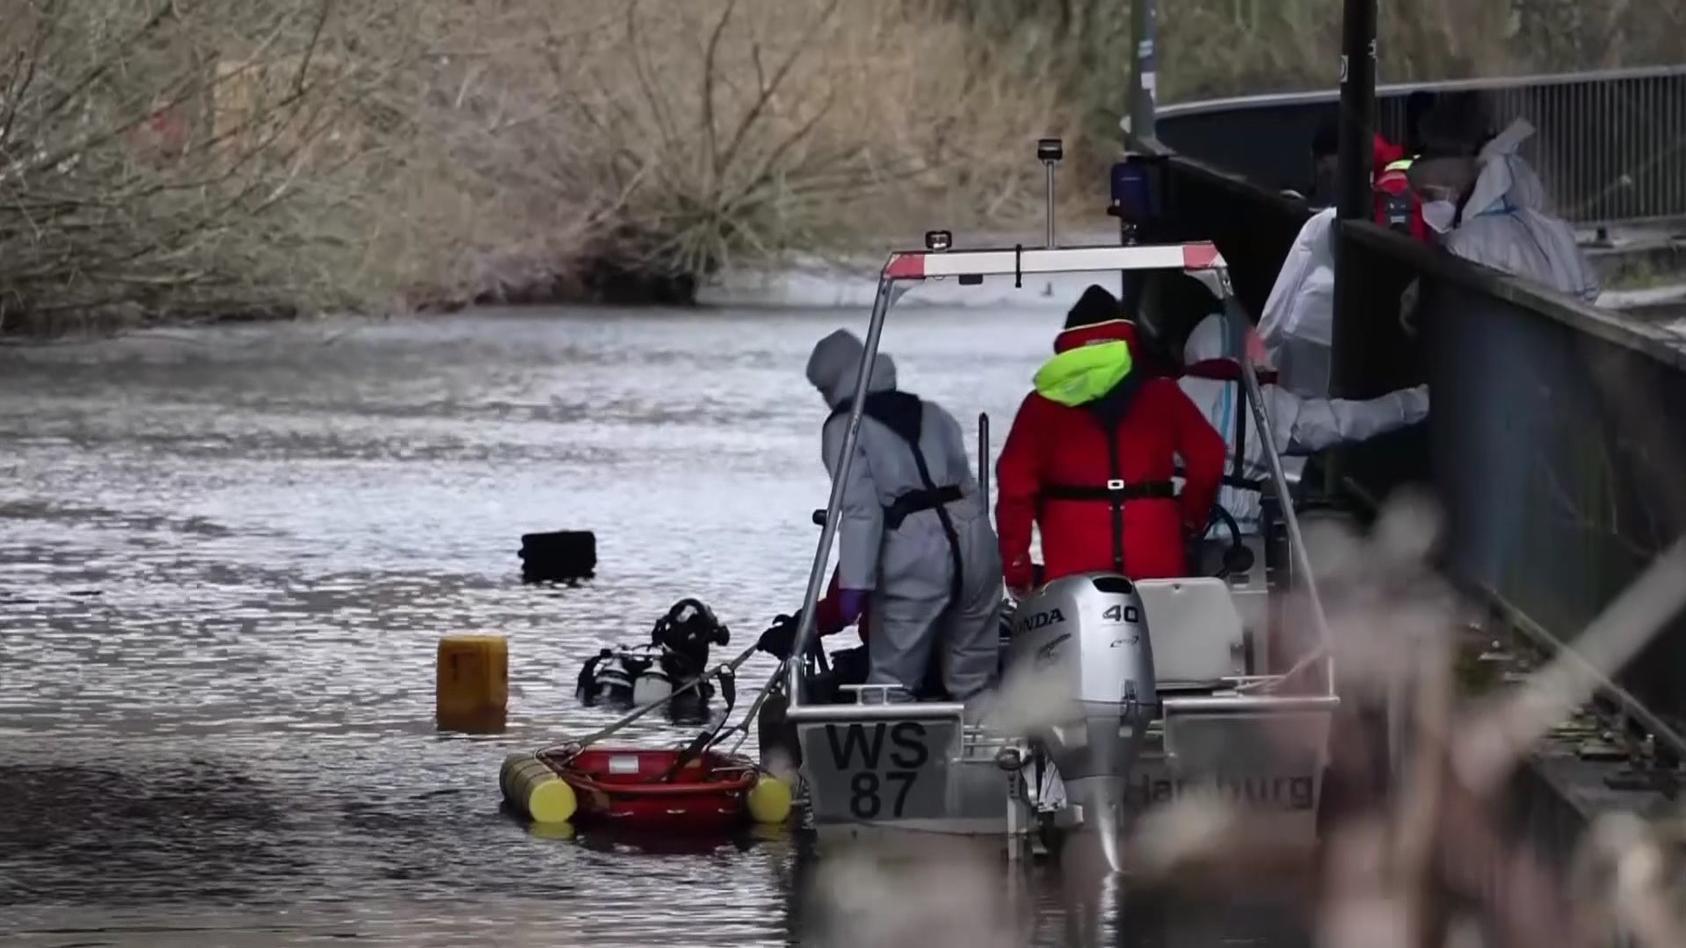 Geantă cu rămăşiţe umane, pescuită într-un canal din Germania